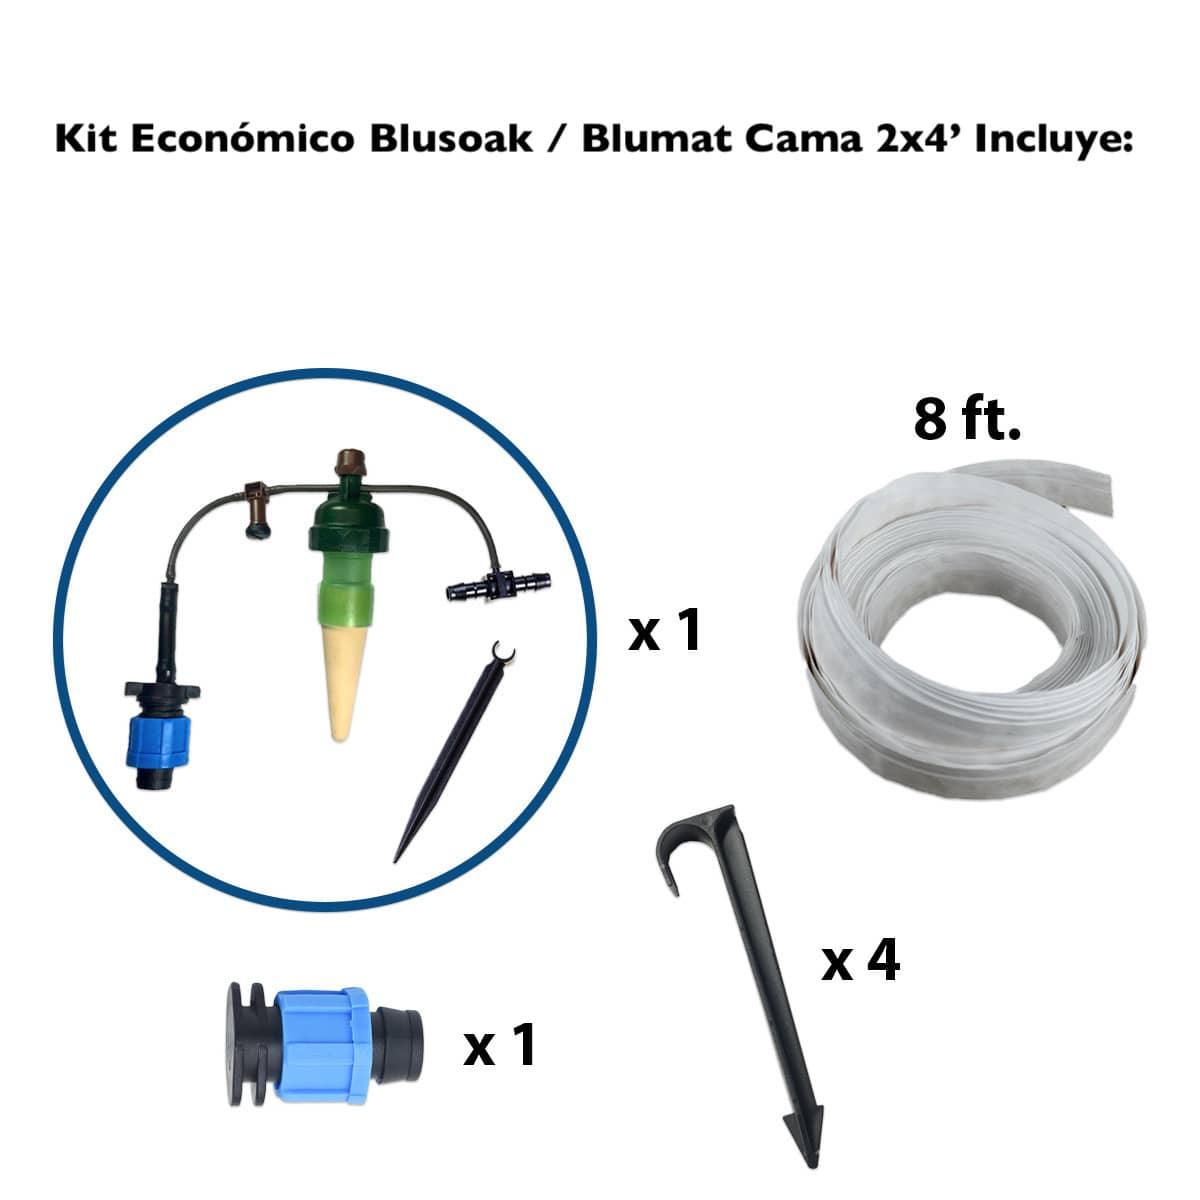 Kit BluSoak con Sensor Blumat para Camas de 60 x 120 cm (2x4&#39;) - Mountainside Orgánicos